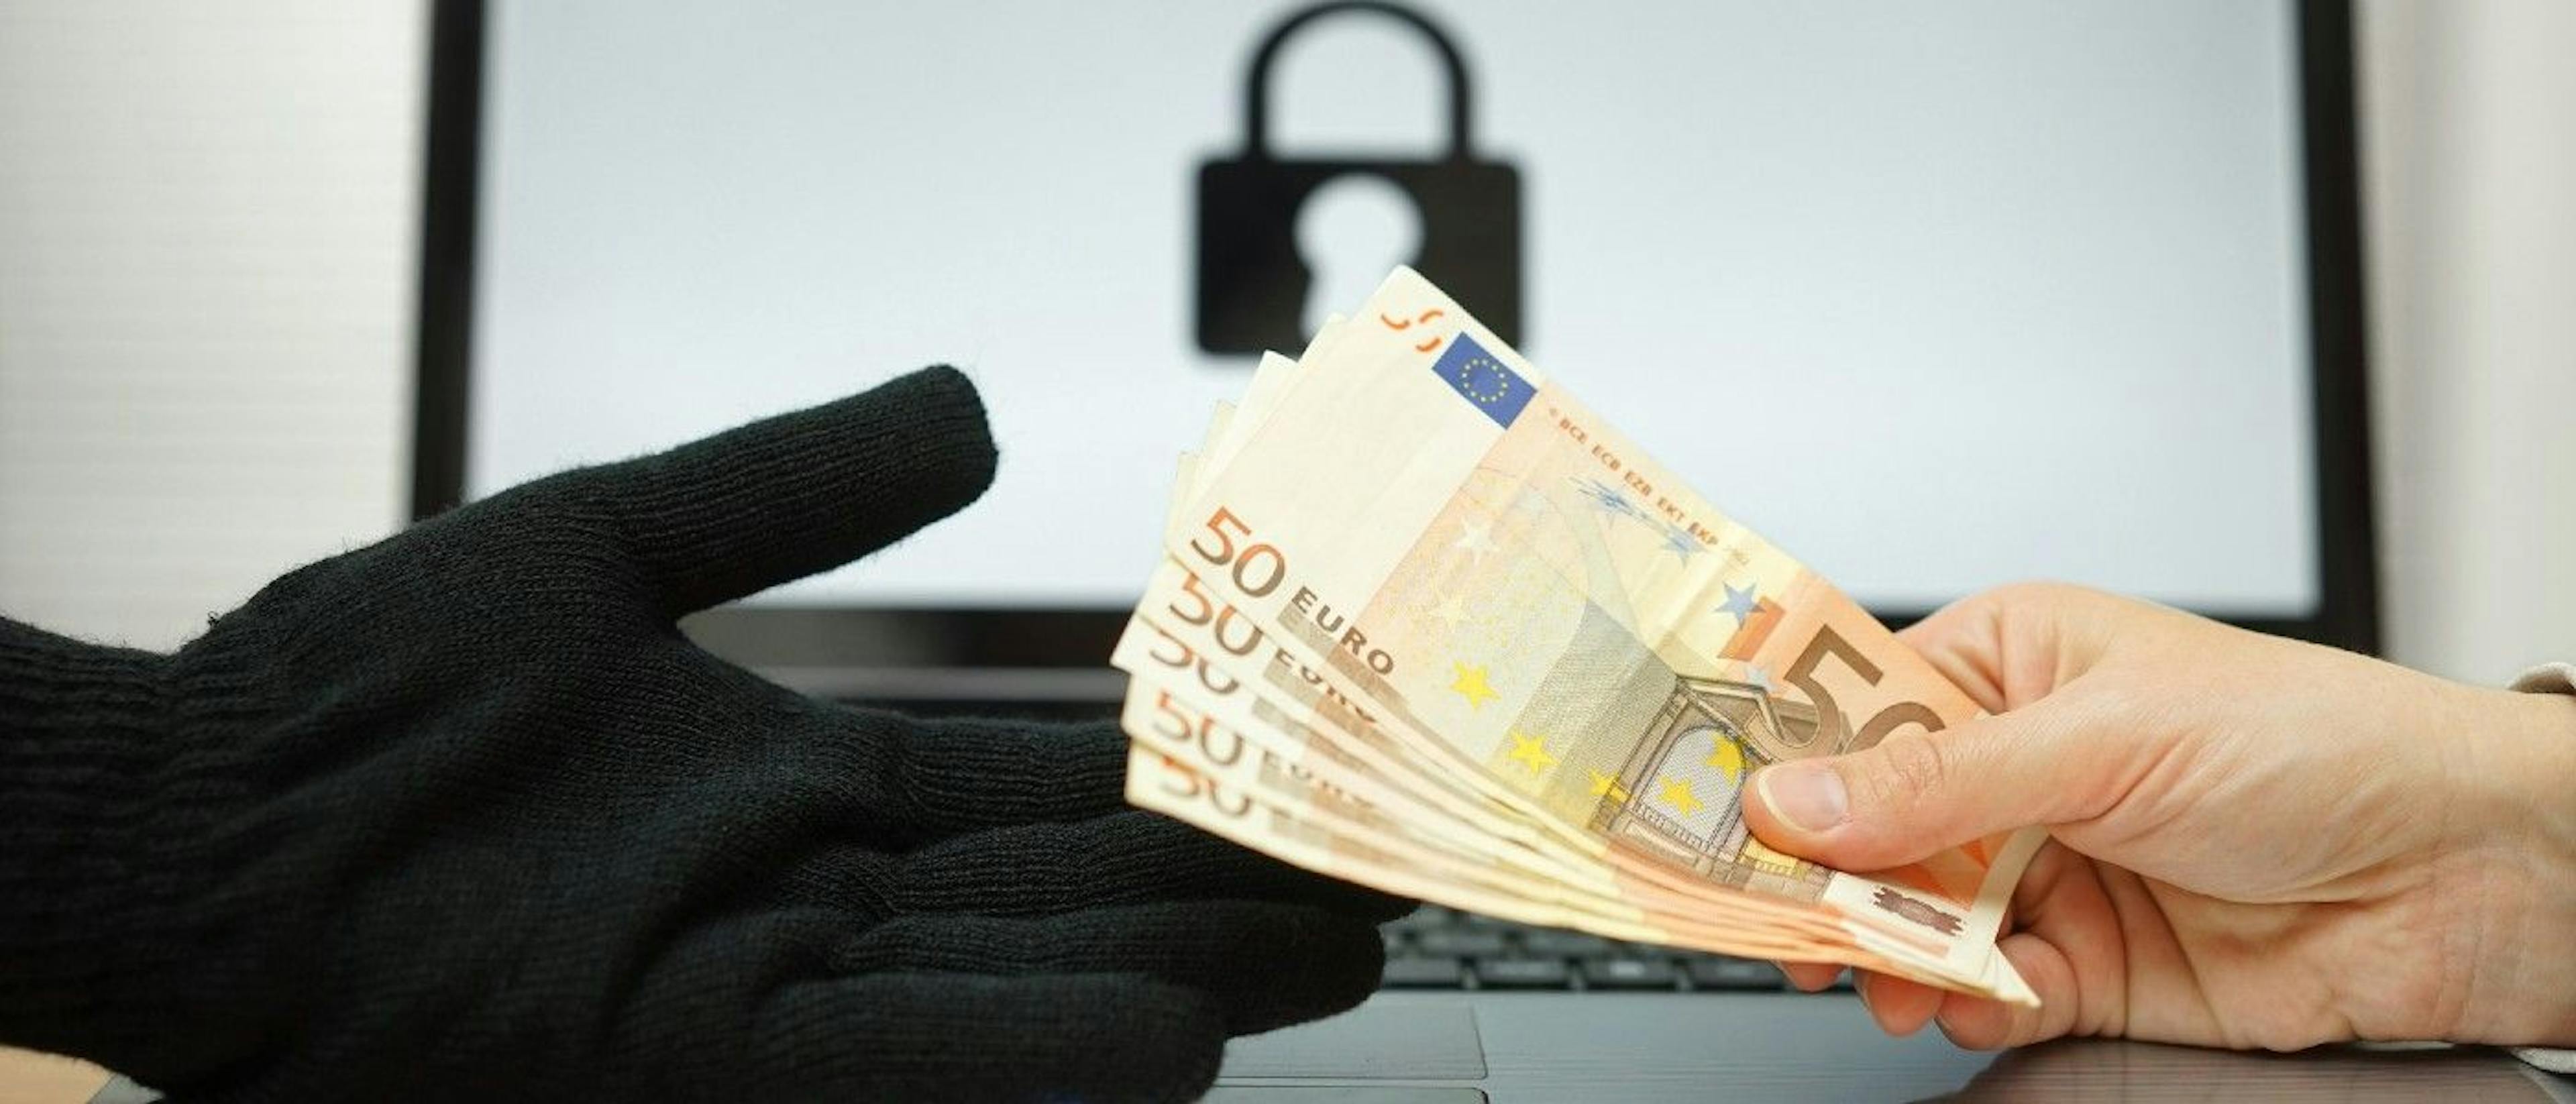 featured image - Welche rechtlichen Konsequenzen hat die Zahlung von Ransomware-Forderungen?